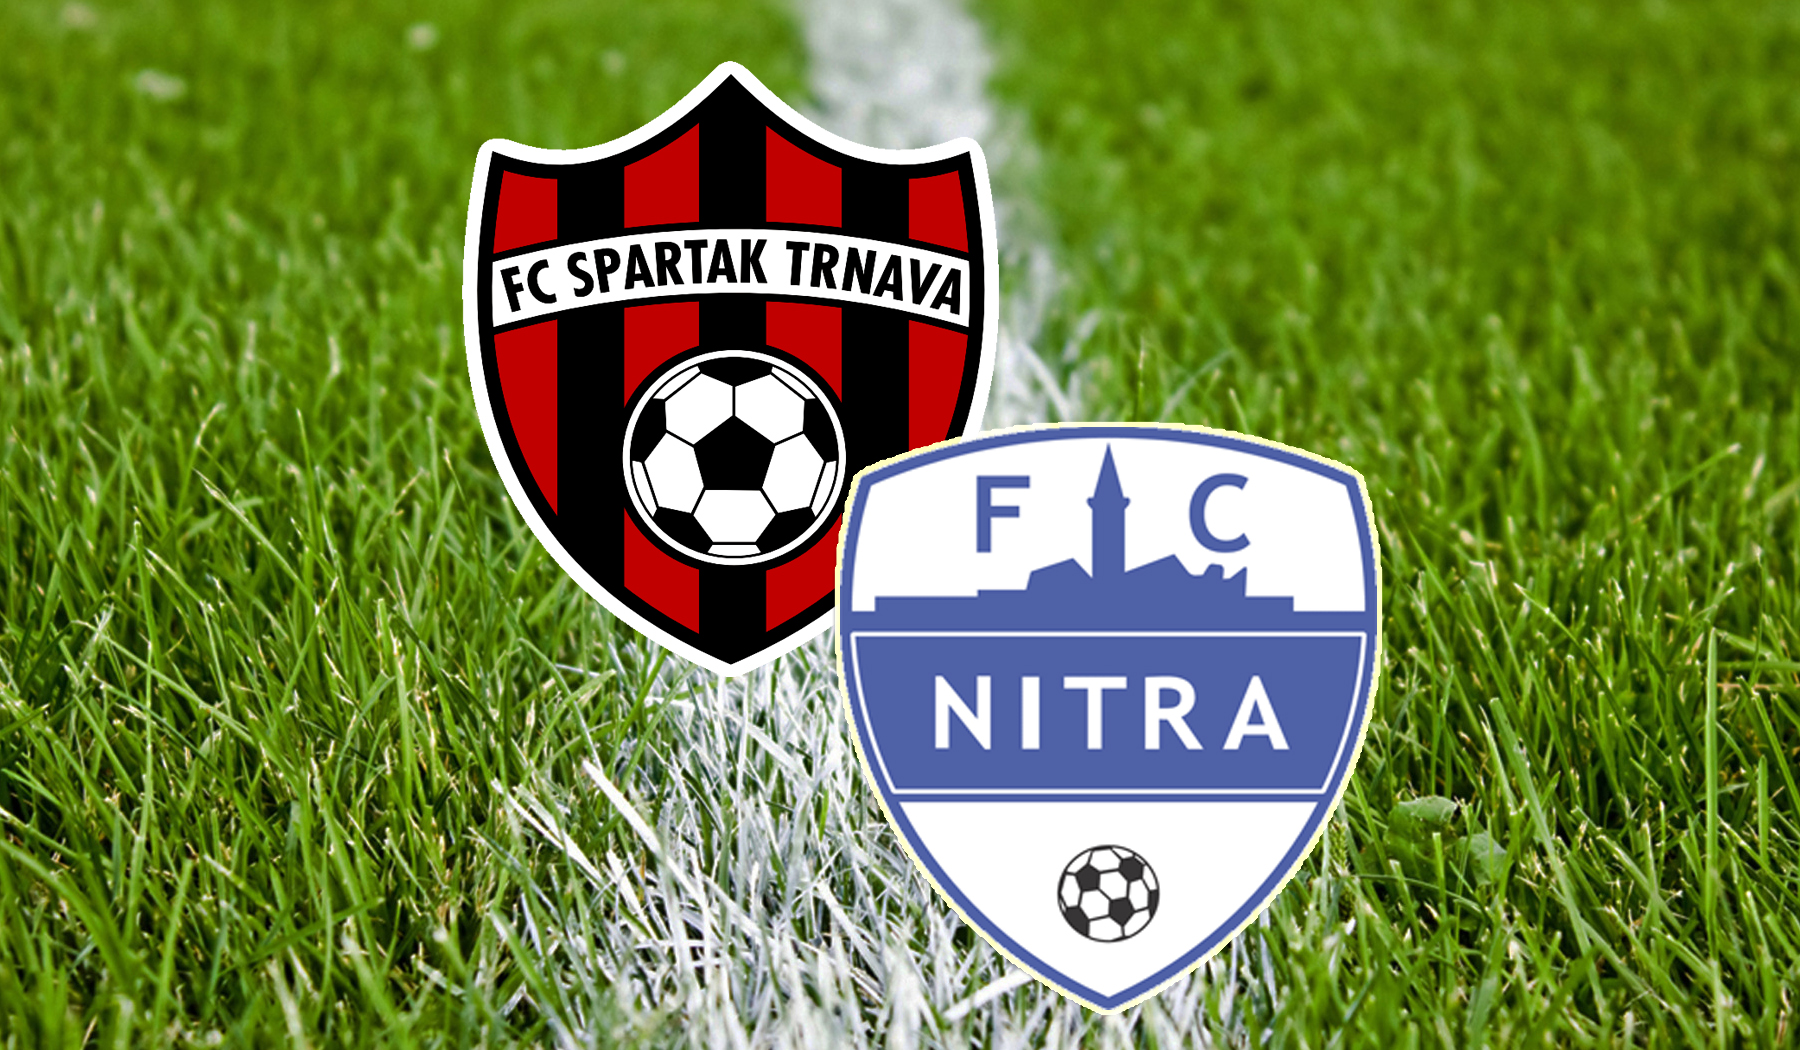 FC Spartak Trnava - FC Nitra